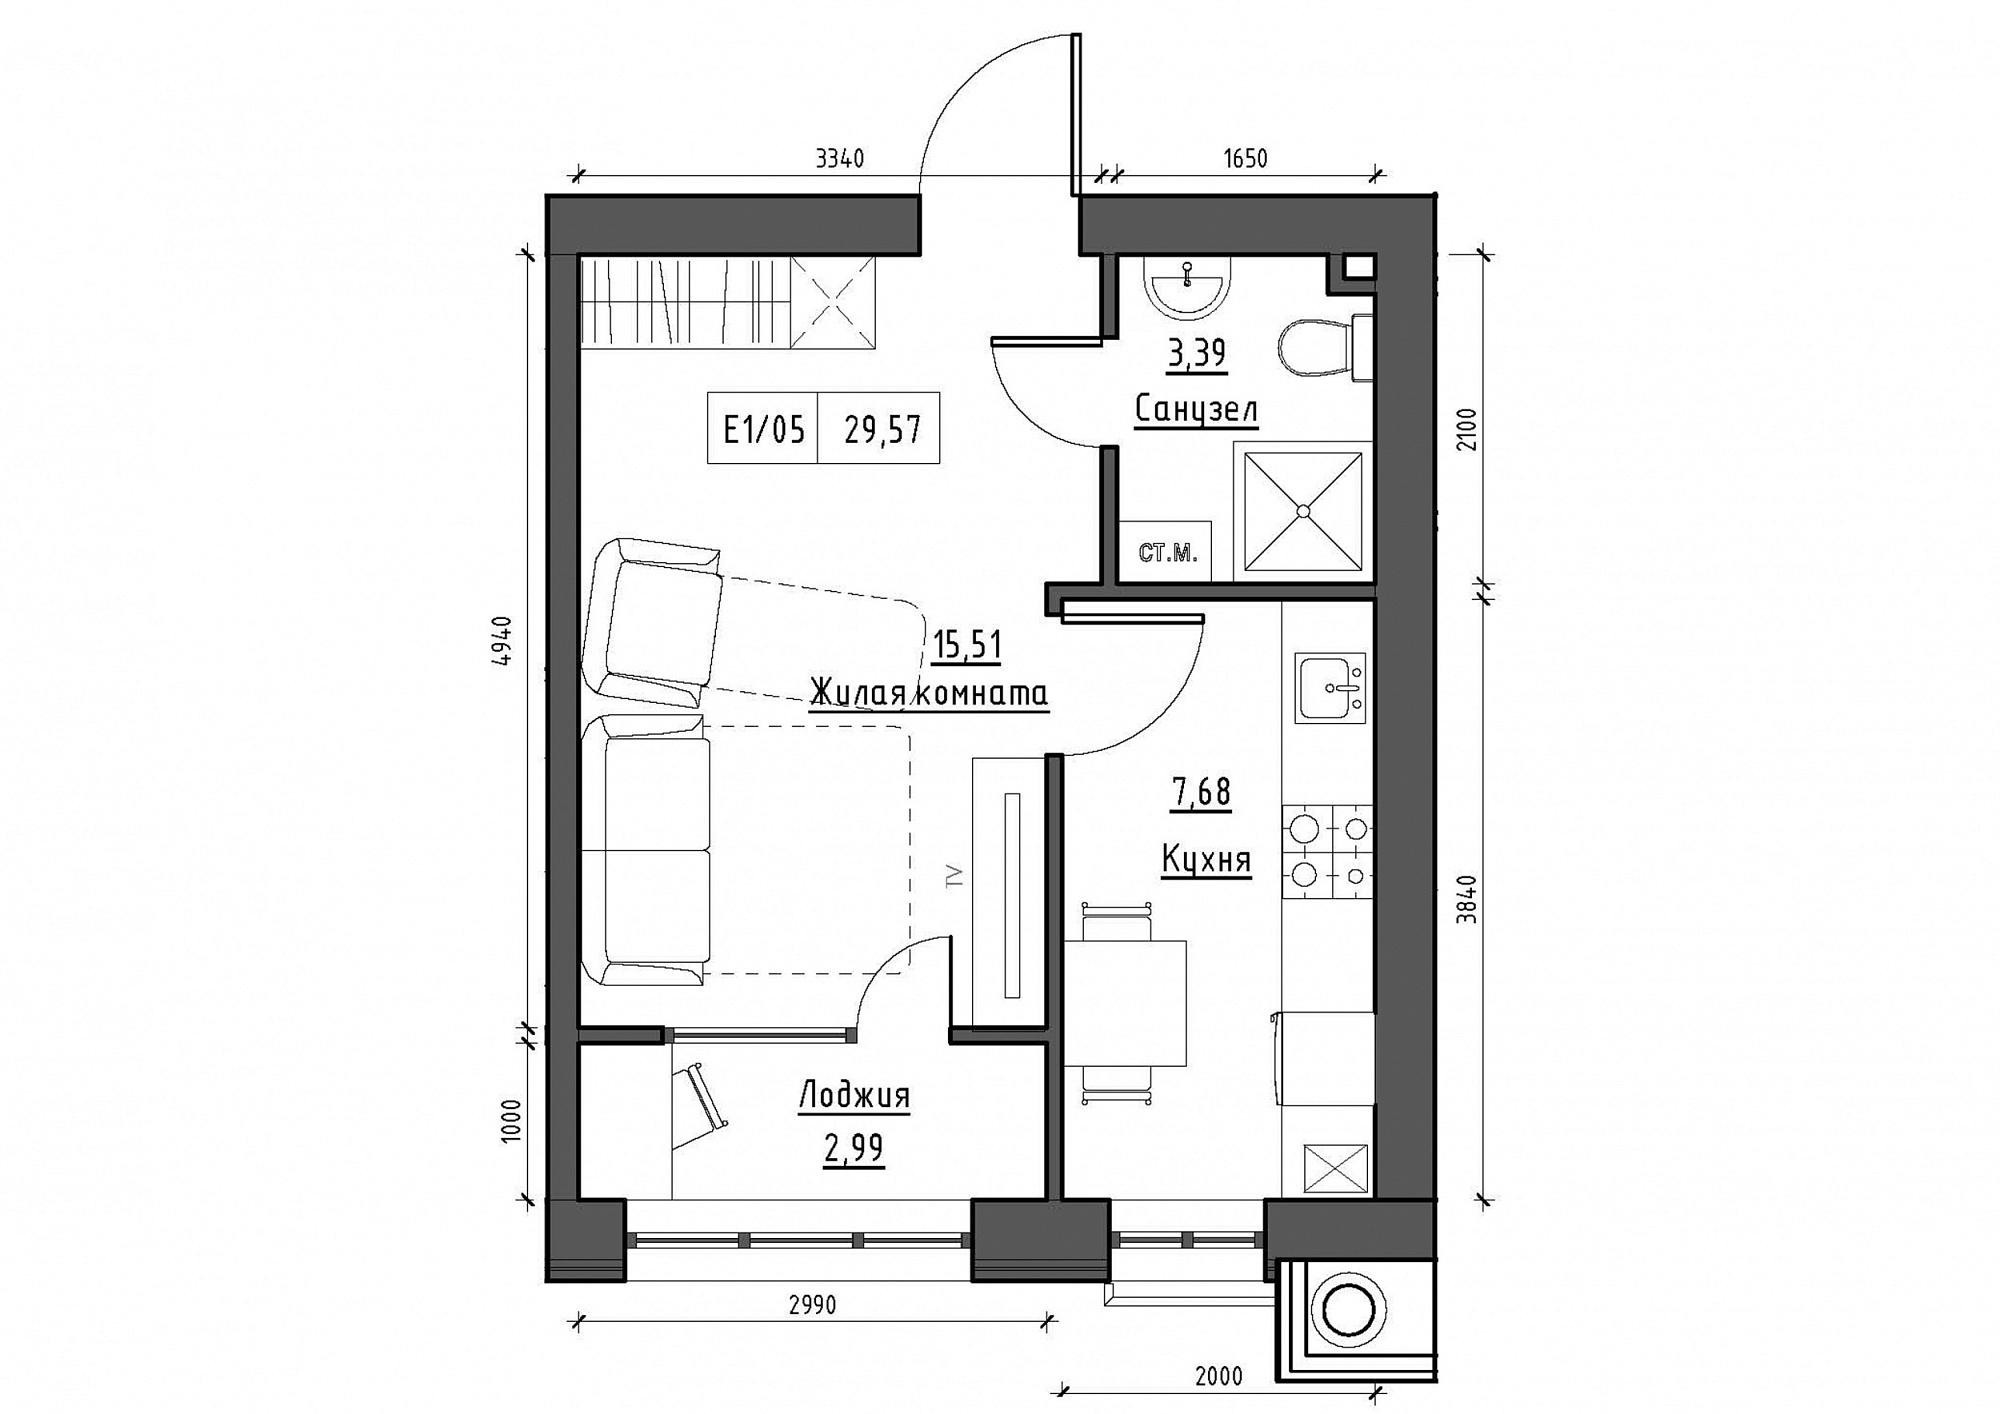 Планировка 1-к квартира площей 29.57м2, KS-012-03/0006.